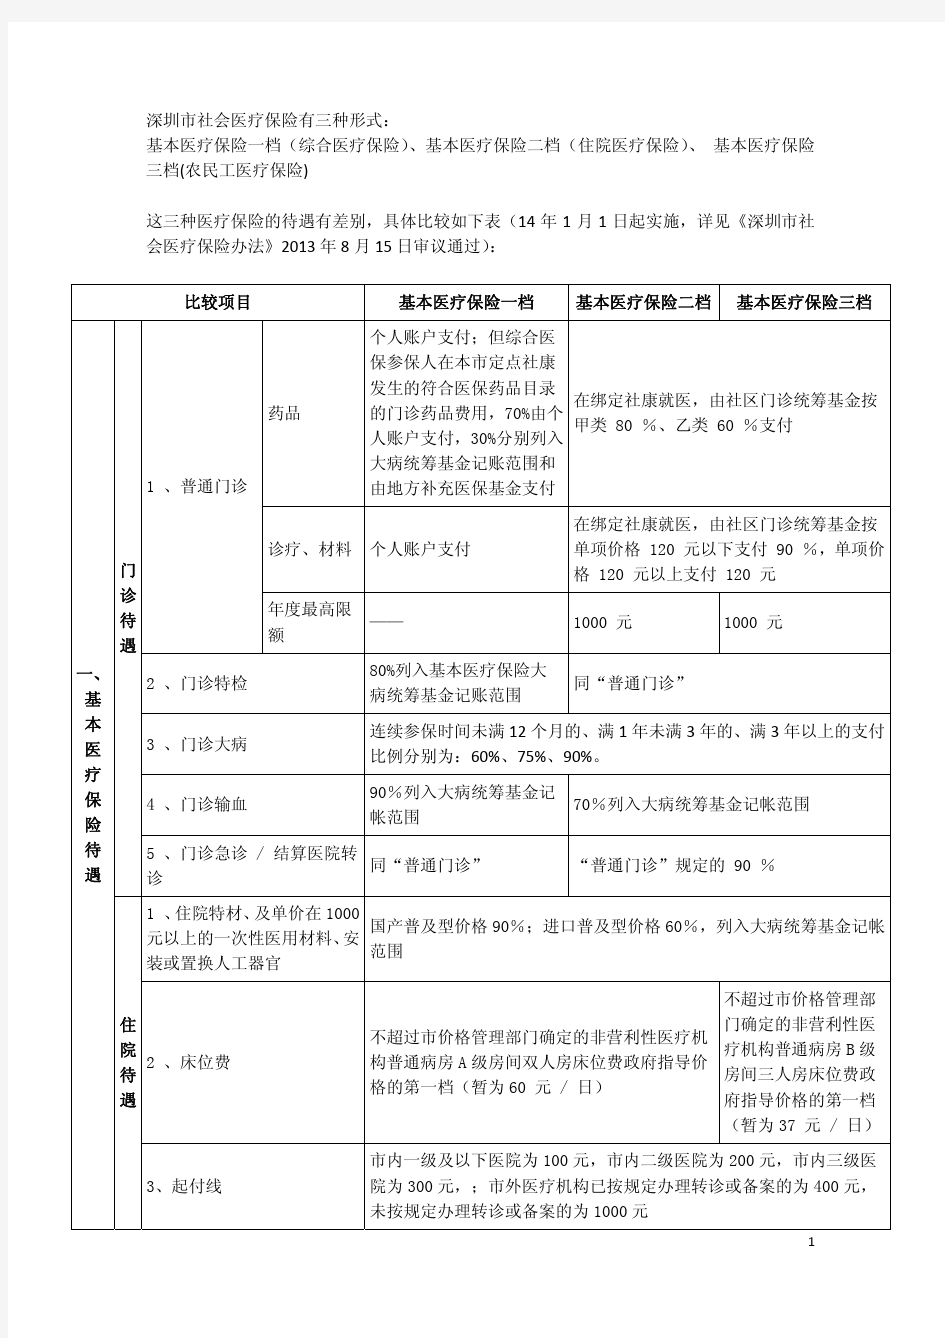 [医保待遇] 深圳市社会医疗保险三种形式待遇比较表--2014年9月4日